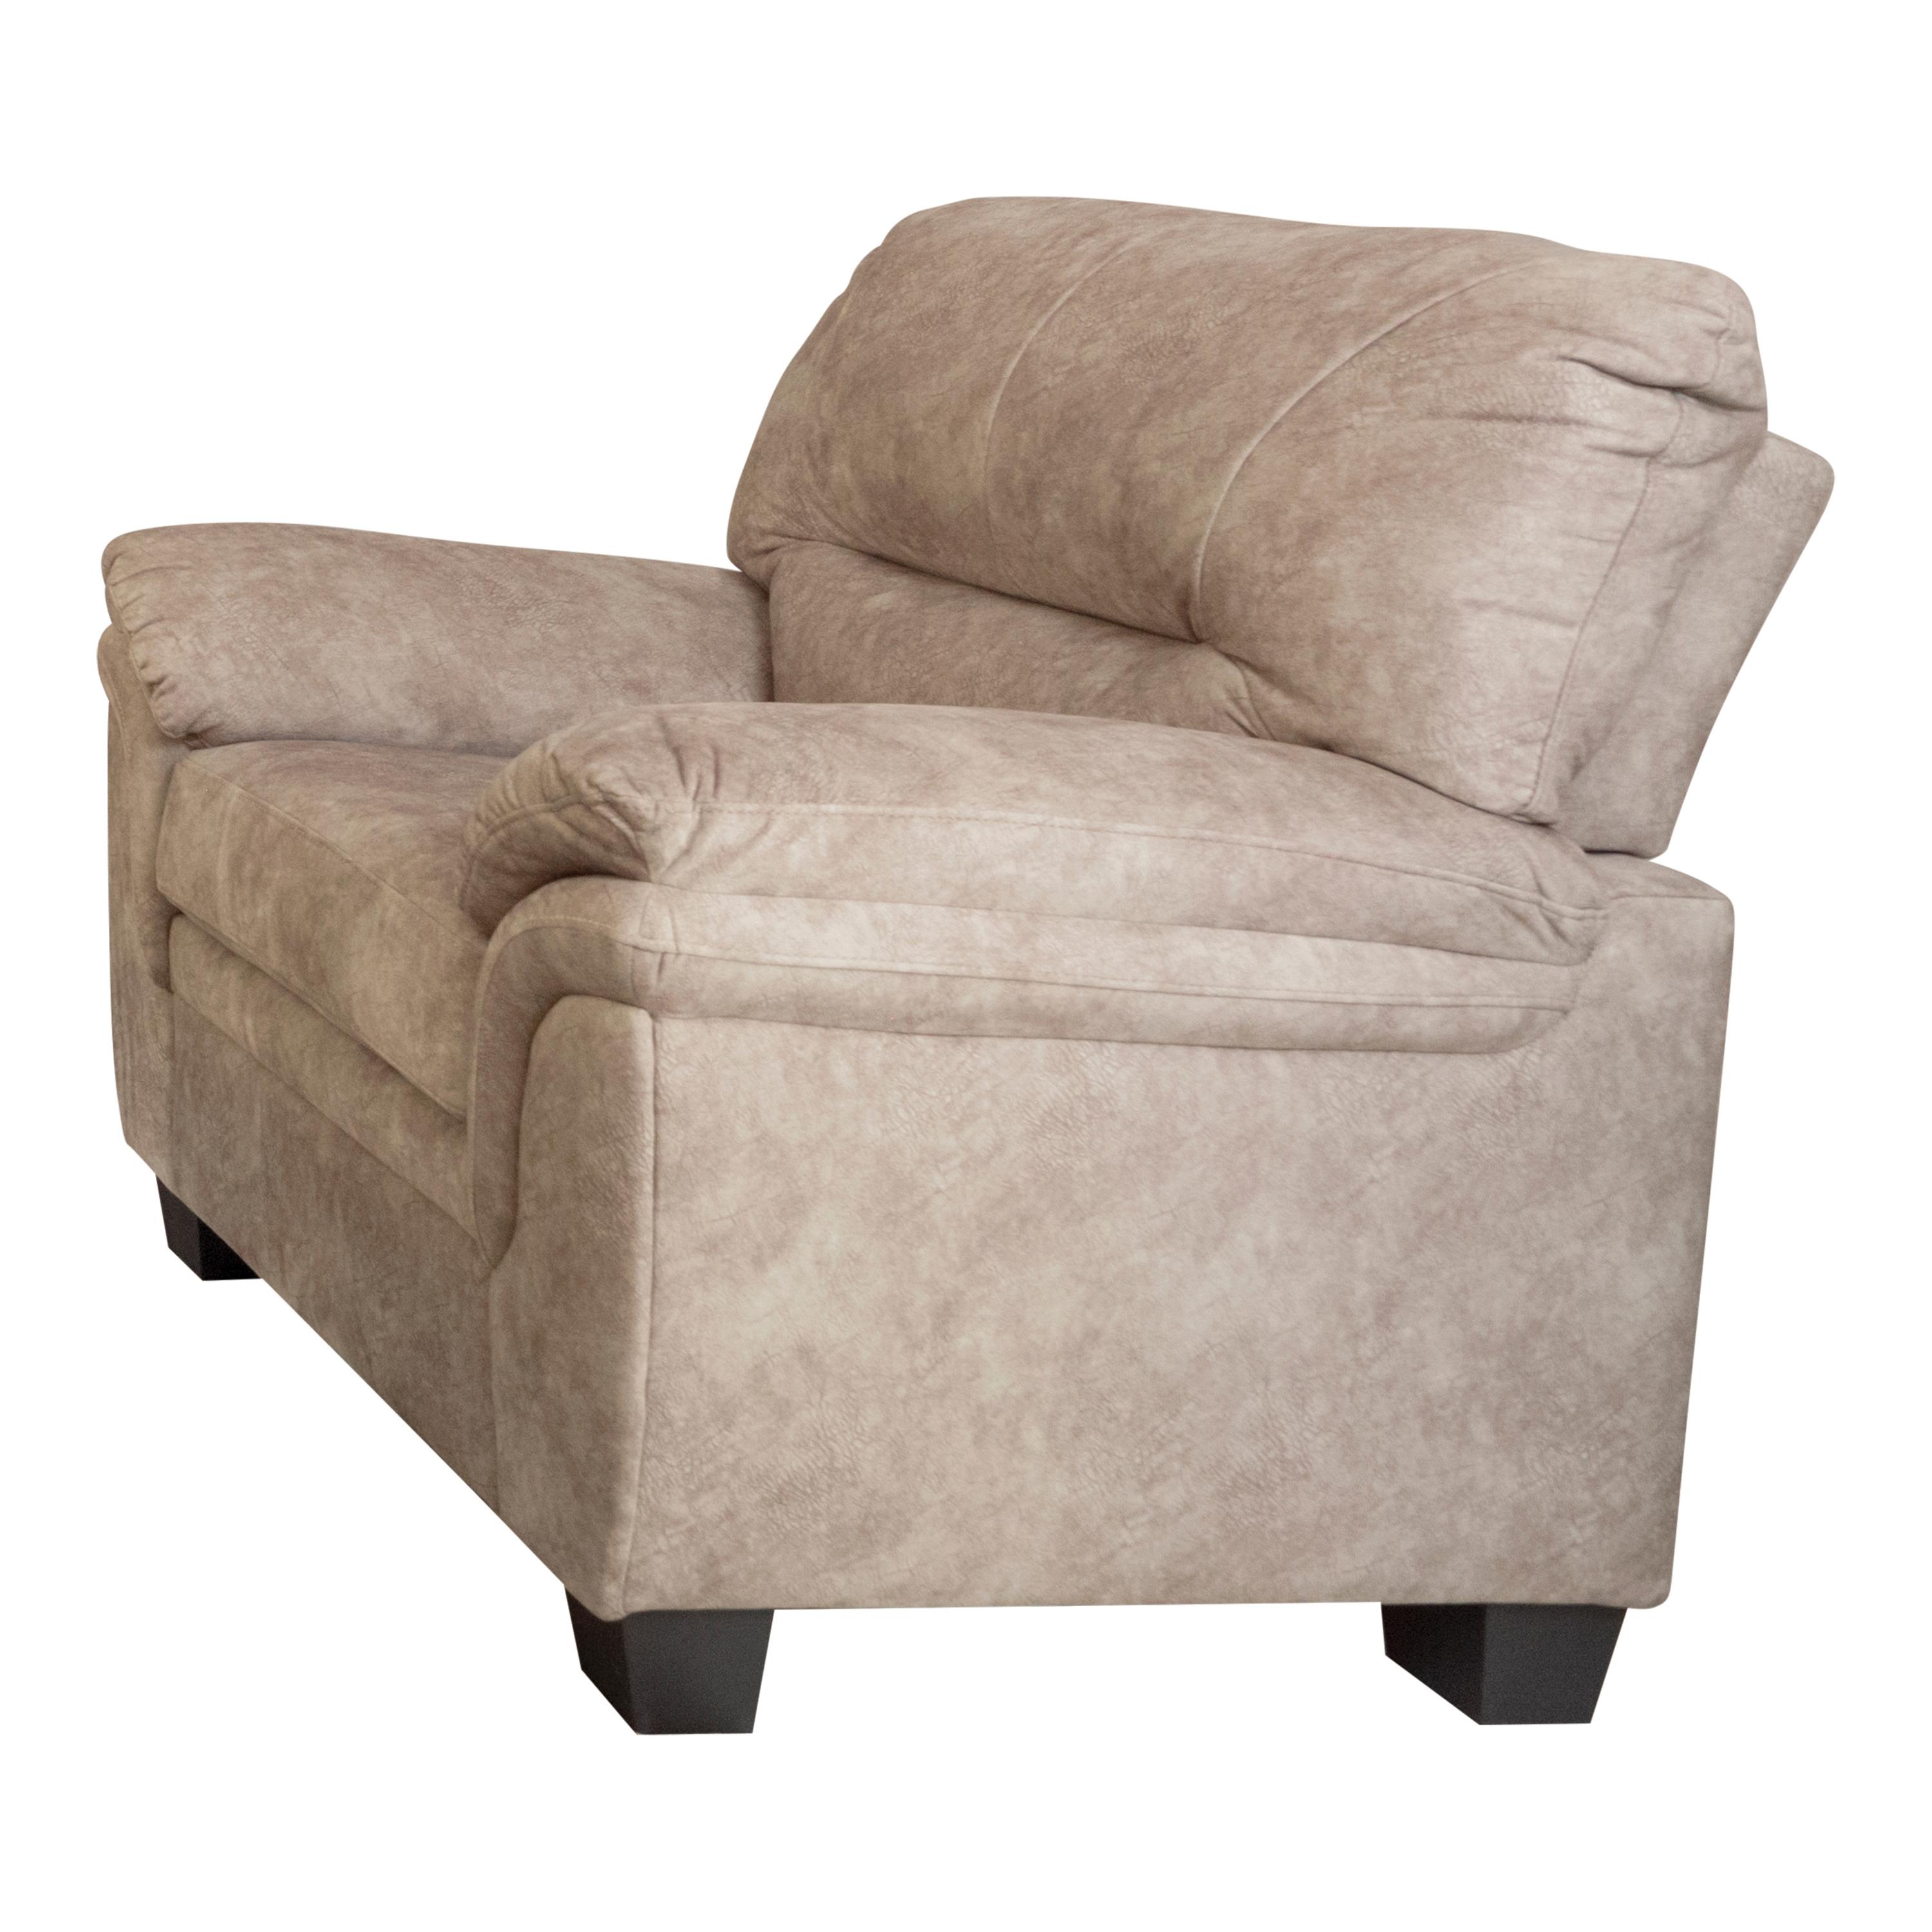 Transitional Arm Chair 509253 Holman 509253 in Beige Velvet